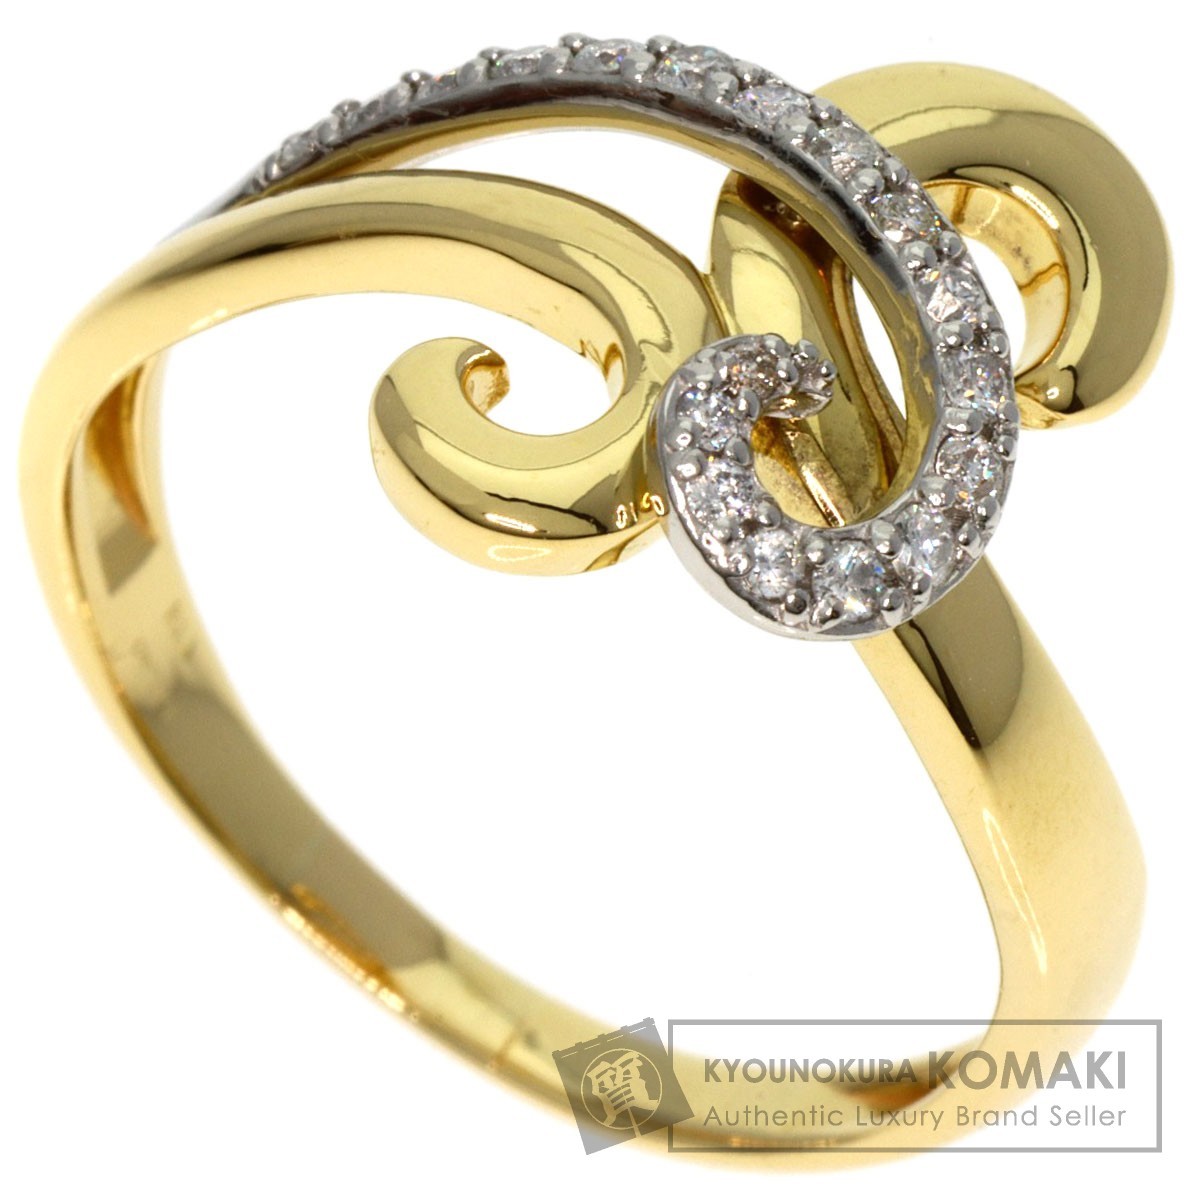 一番人気物 ジュエリー ダイヤモンド リング・指輪 K18イエロー